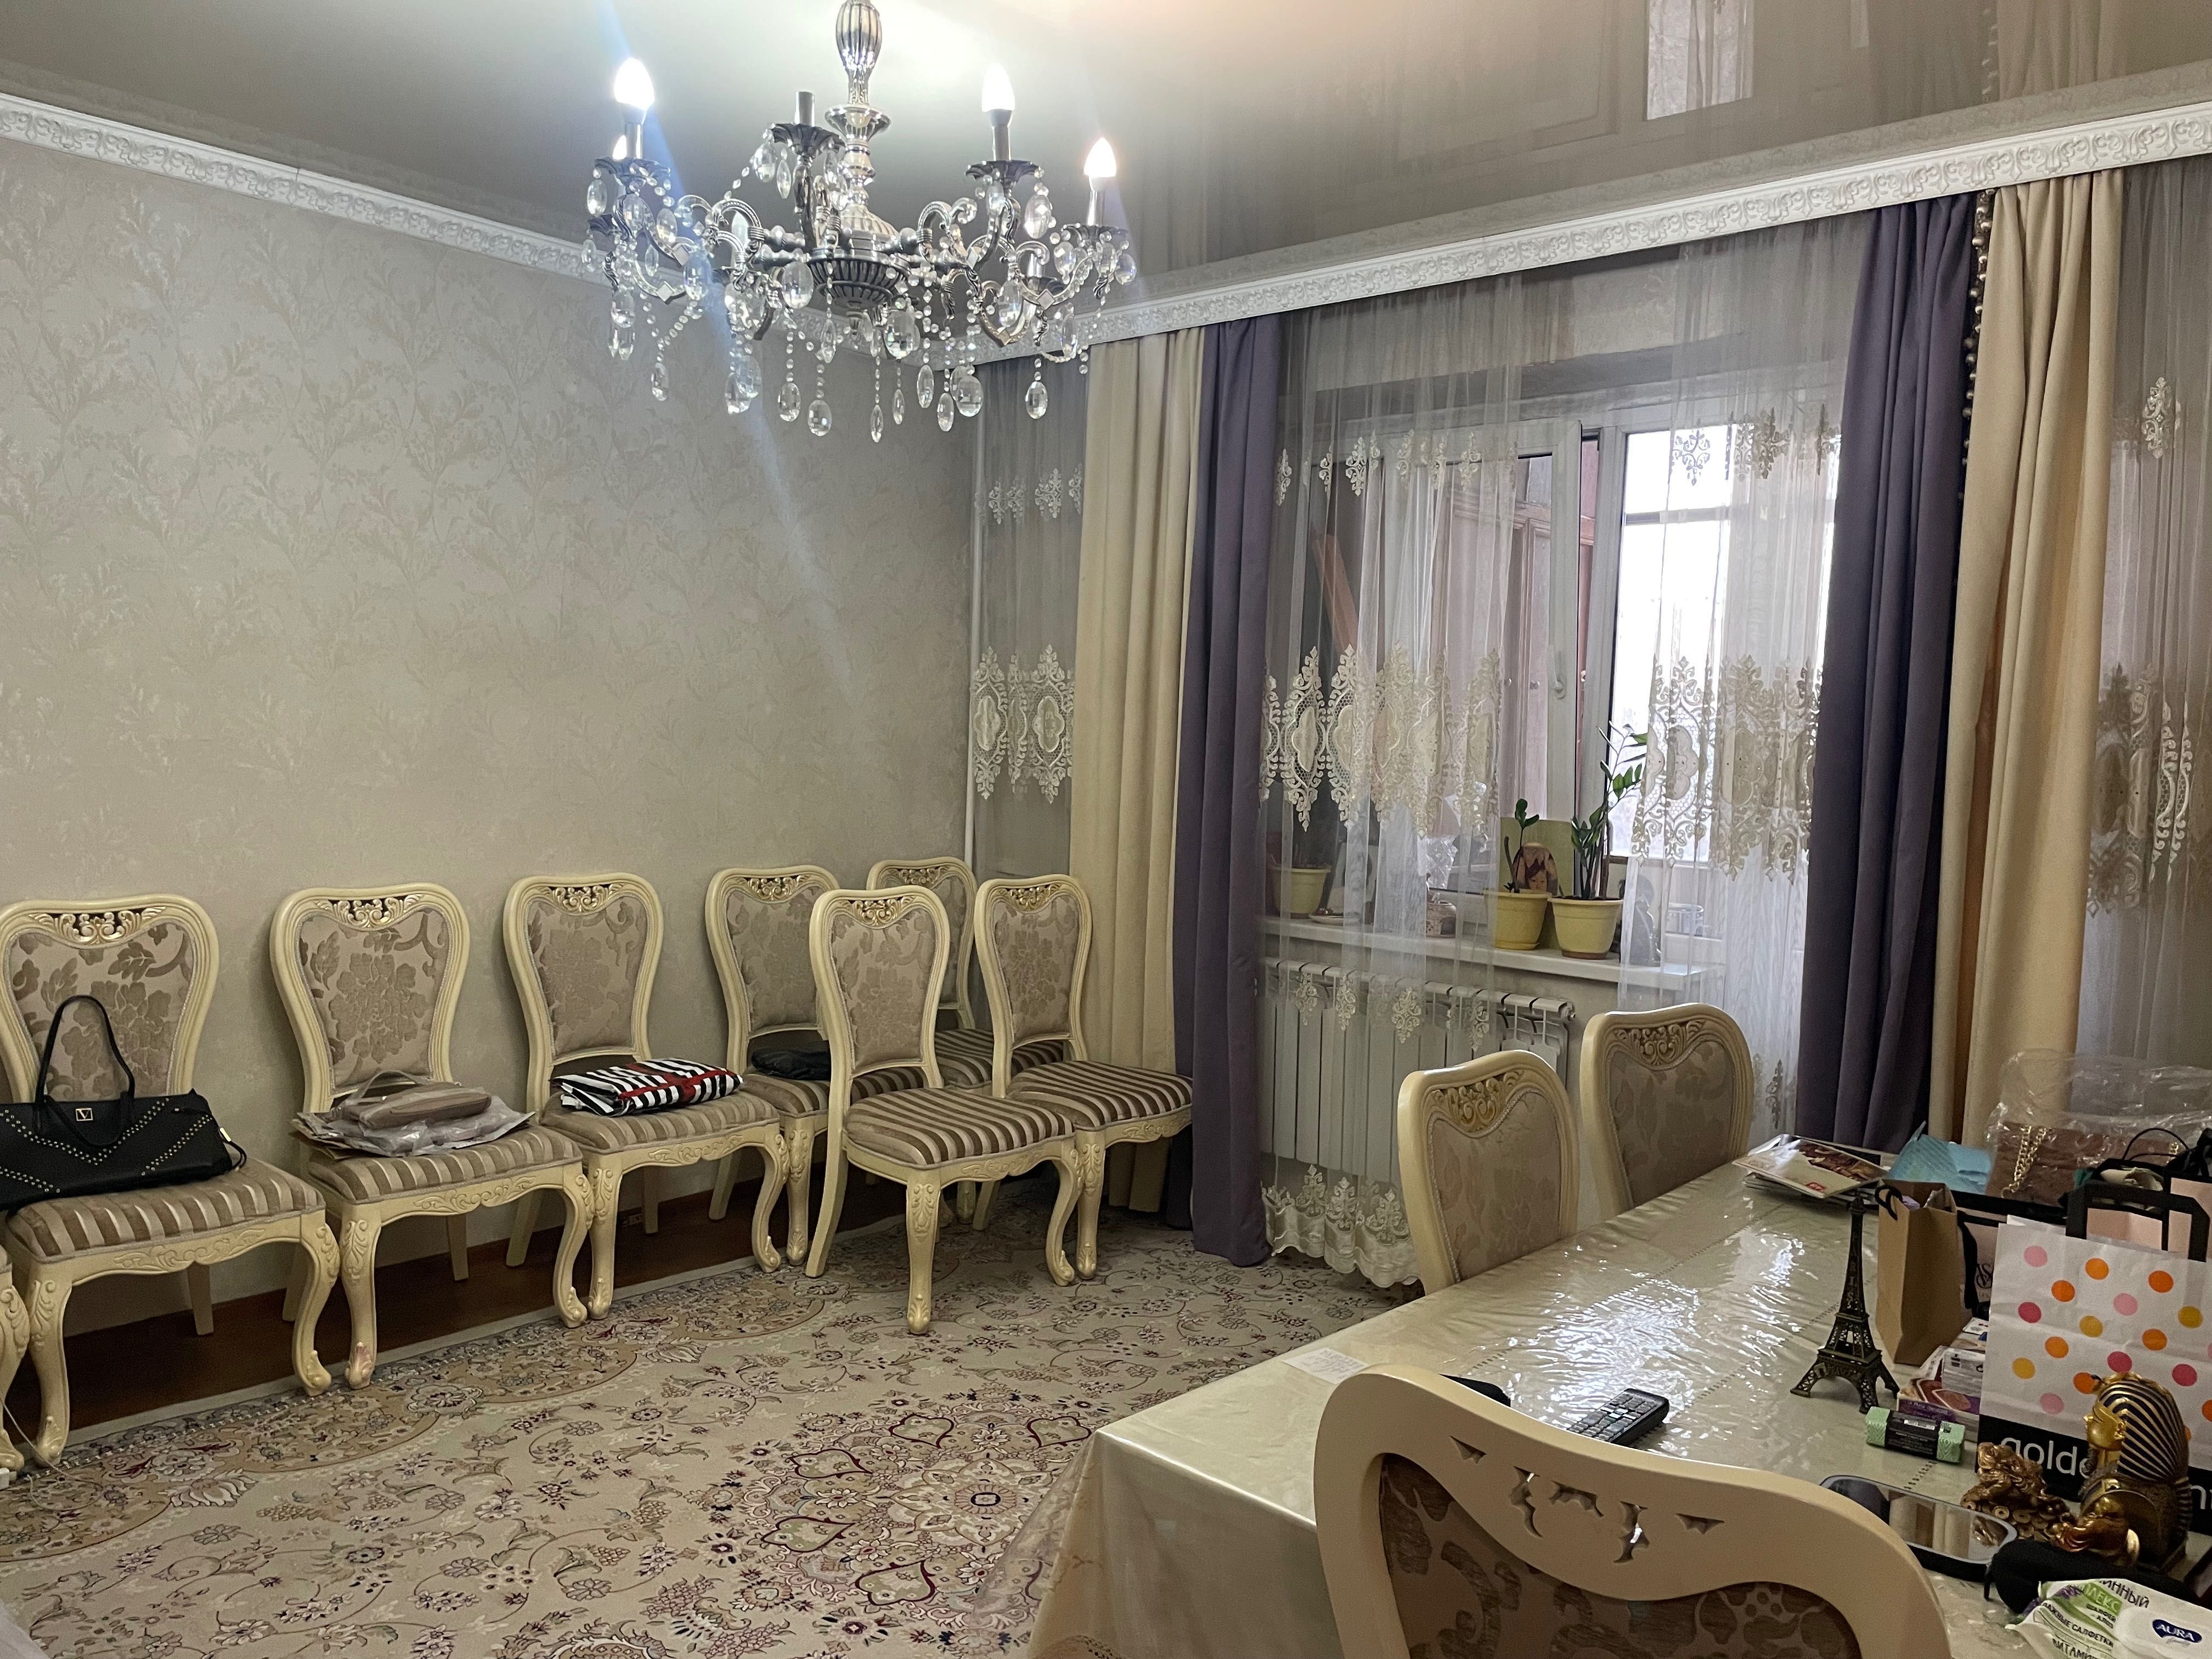 Сдается квартира в городе Алматы